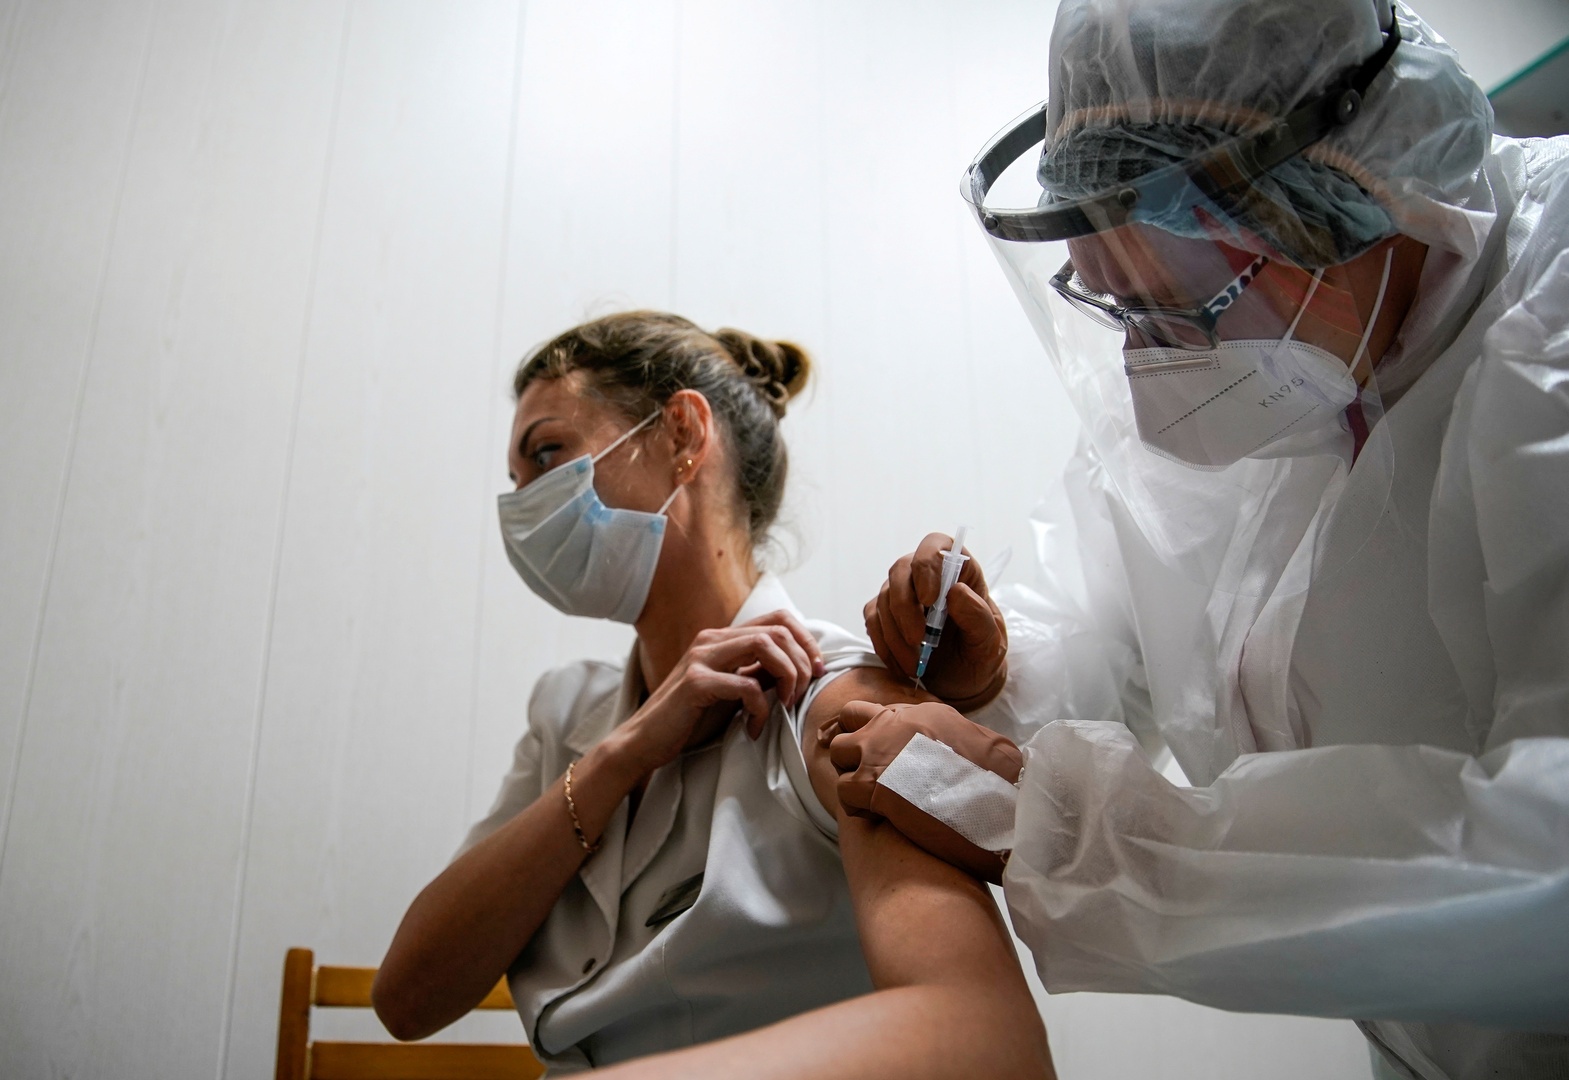 بدء عملية تطعيم المواطنين بلقاح كورونا في روسيا